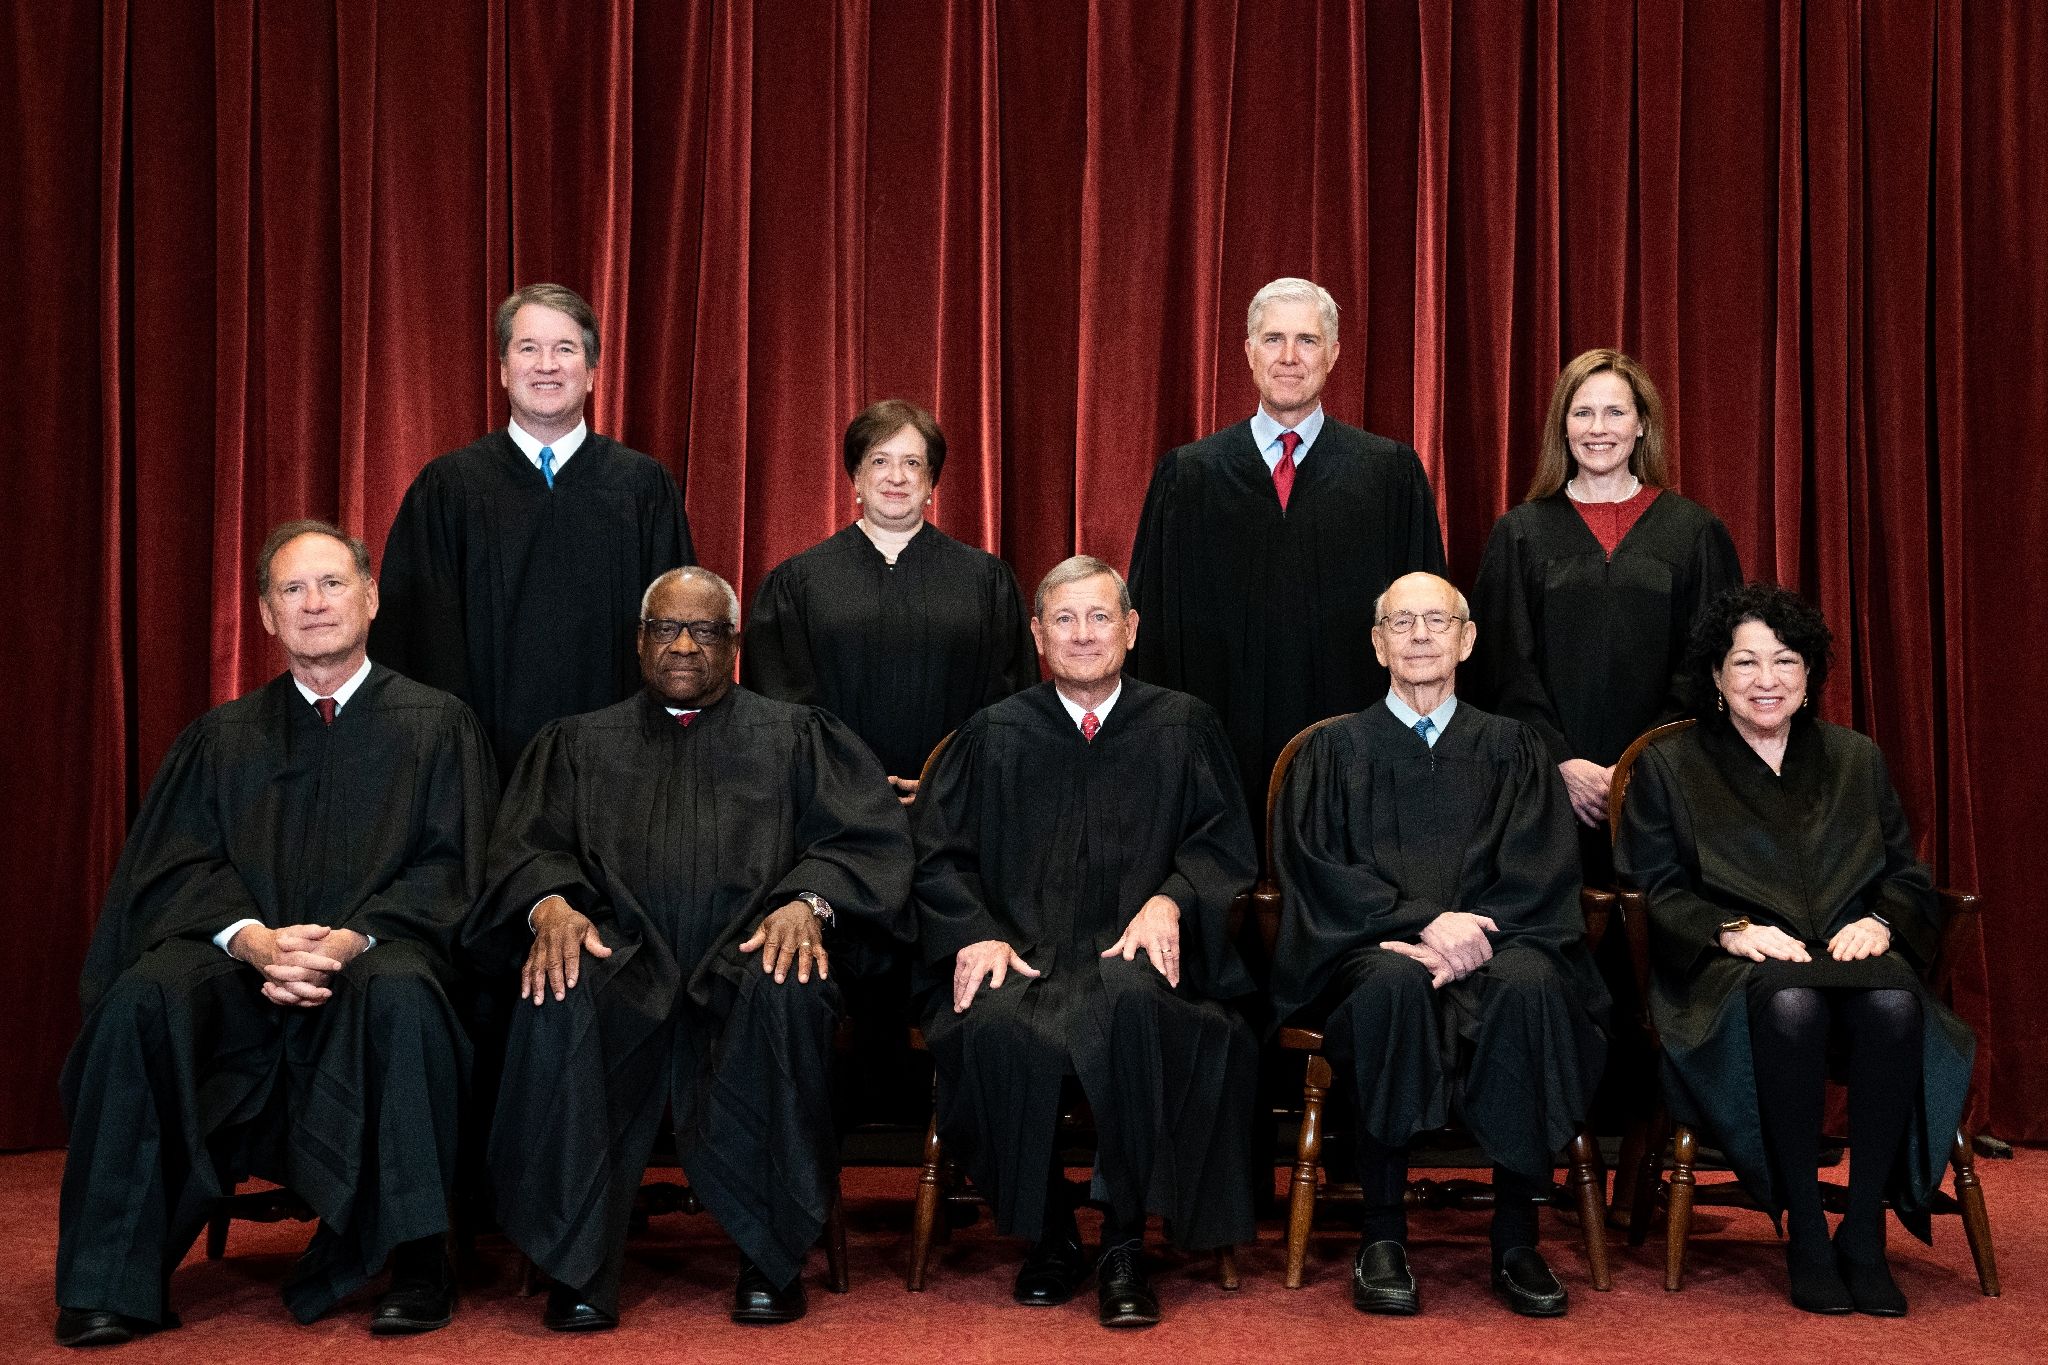 Les 9 membres de la Cour suprême des Etats-Unis